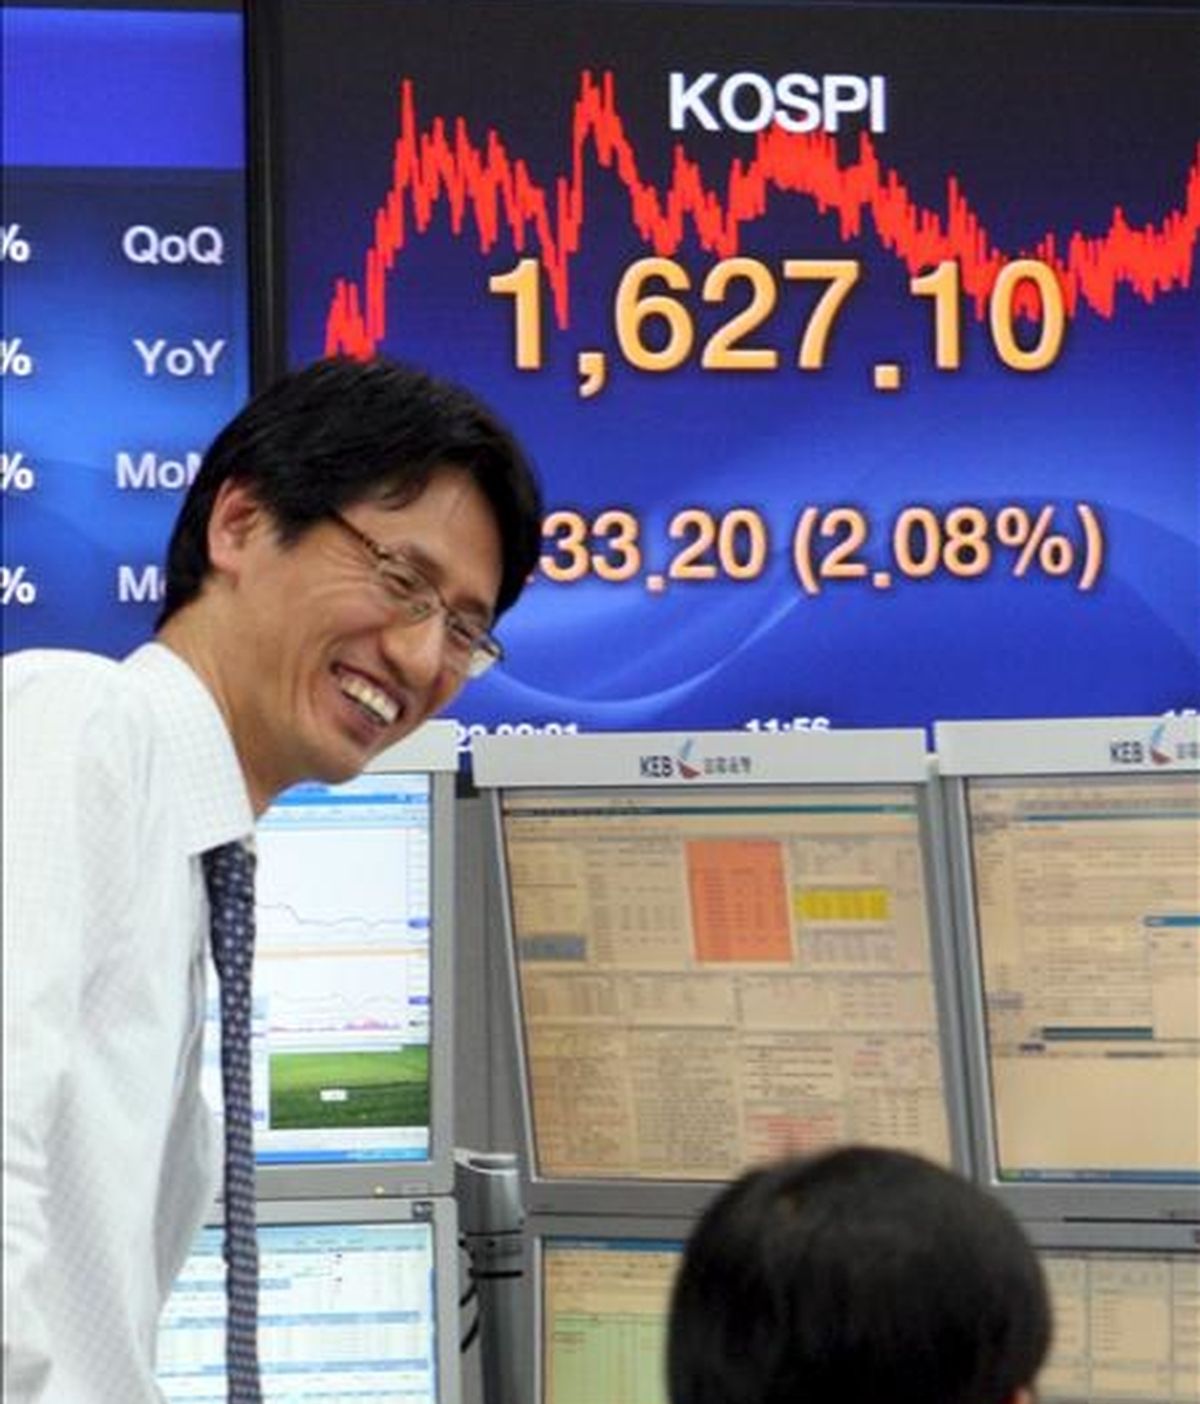 Dos hombres conversan frente a un tablero electrónico que muestra el valor del índice Kospi del mercado surcoreano. EFE/Archivo